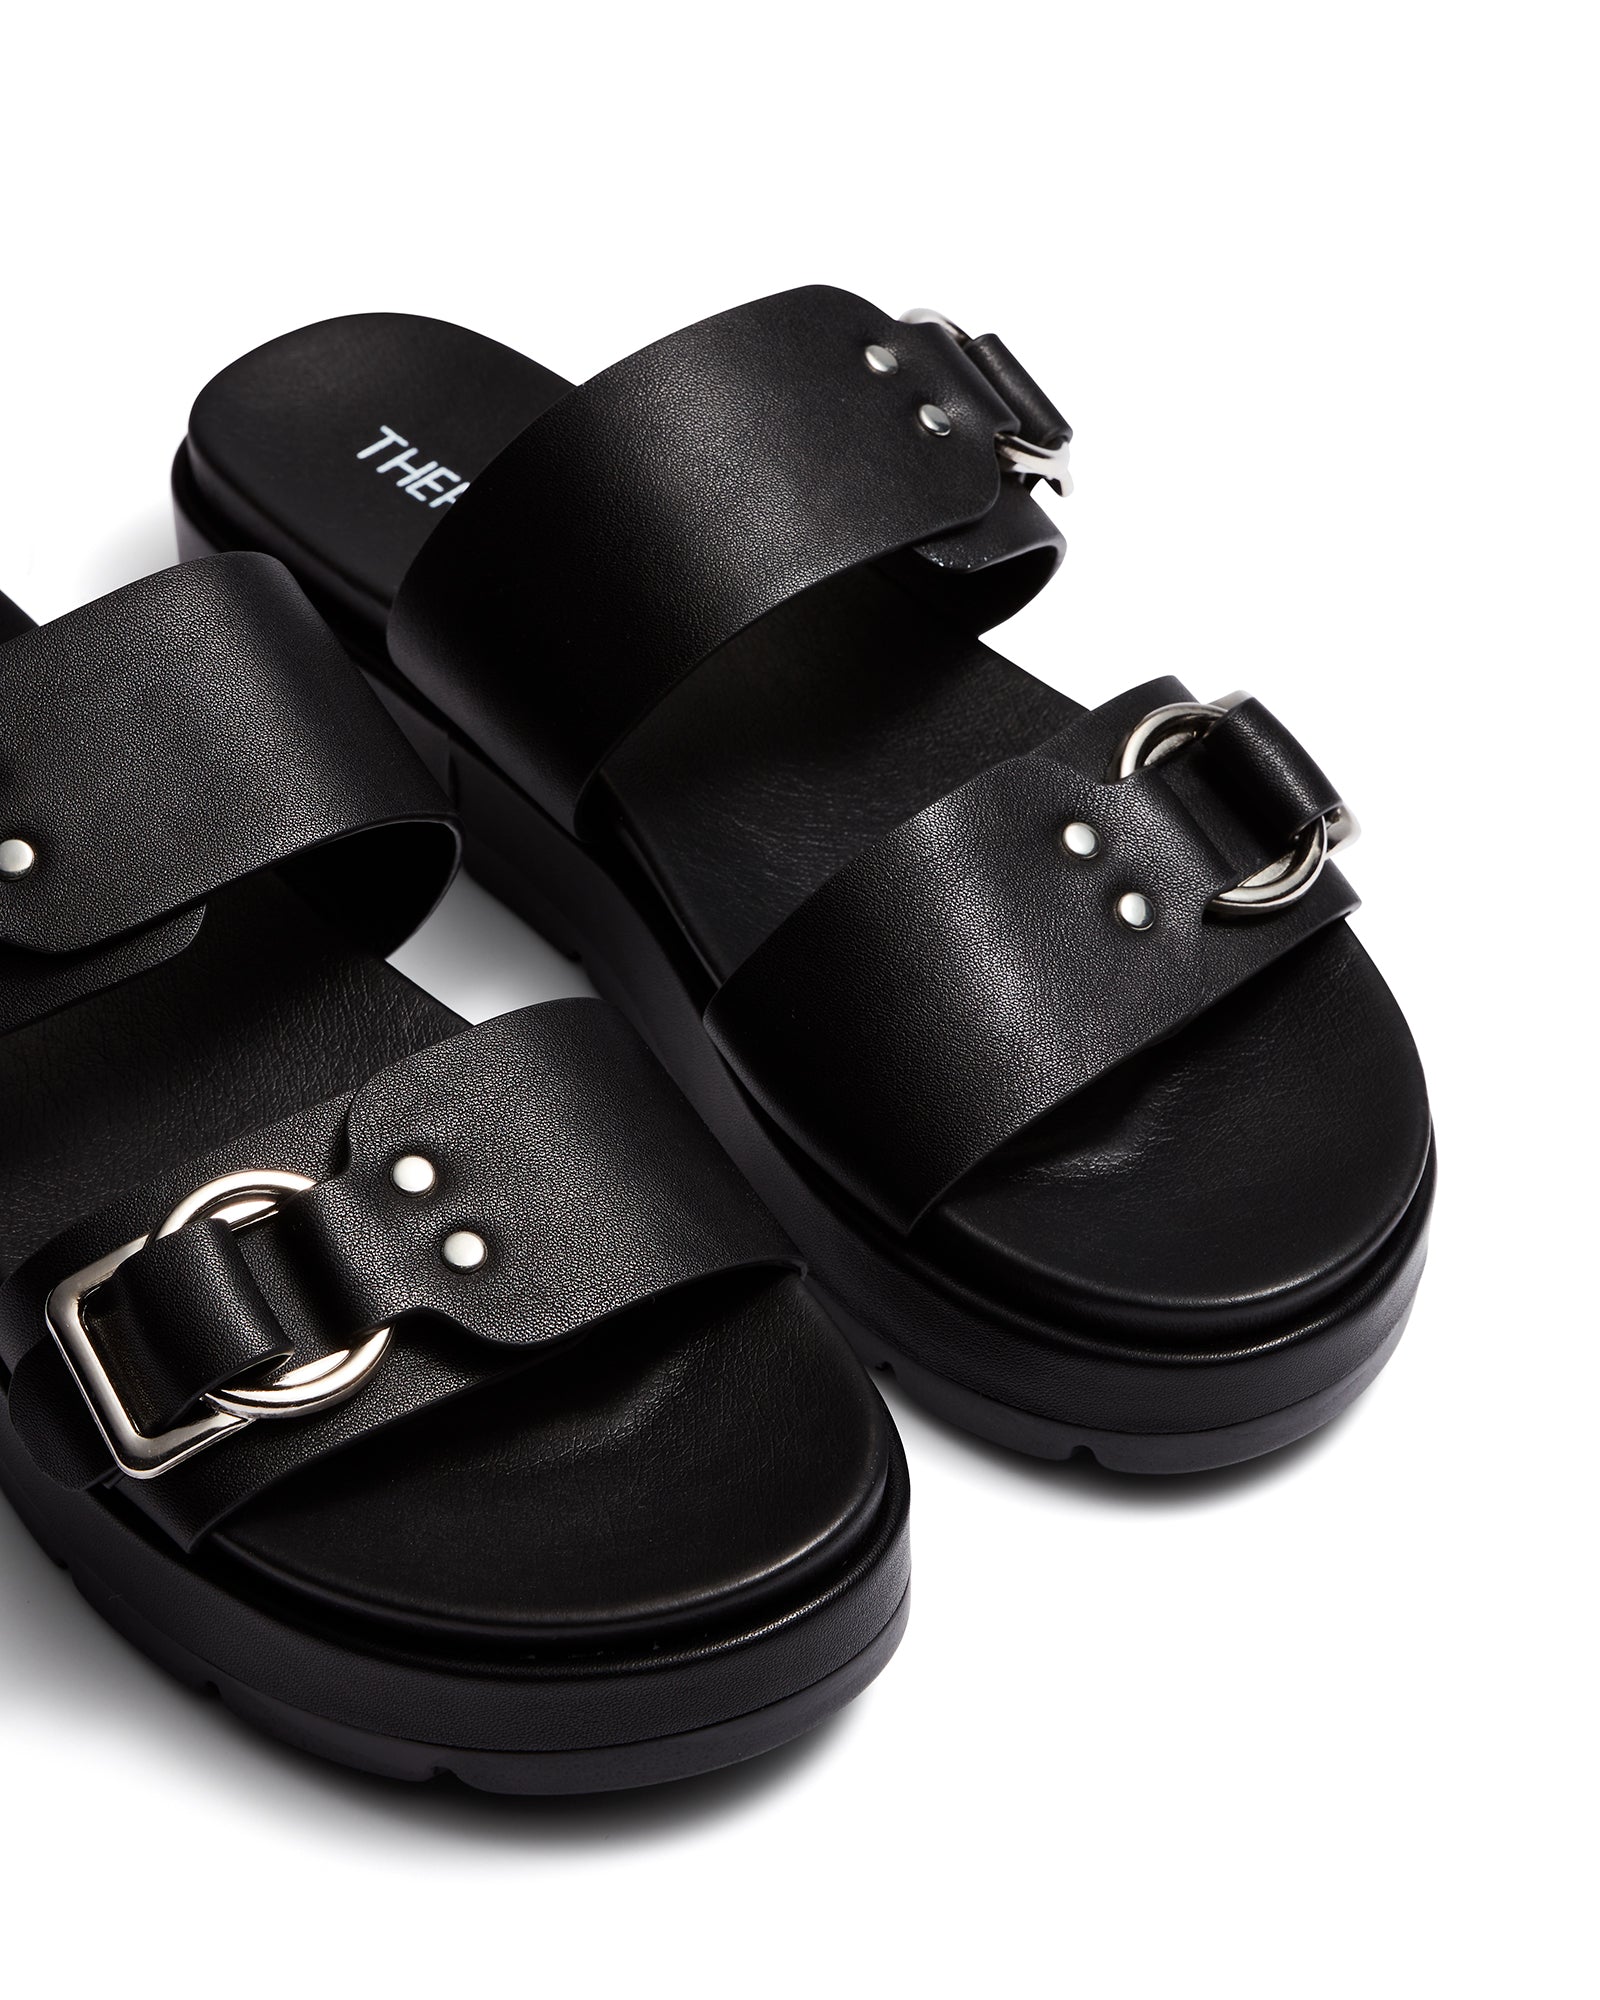 Therapy Shoes Litmus Black | Women's Sandals | Slides | Platform